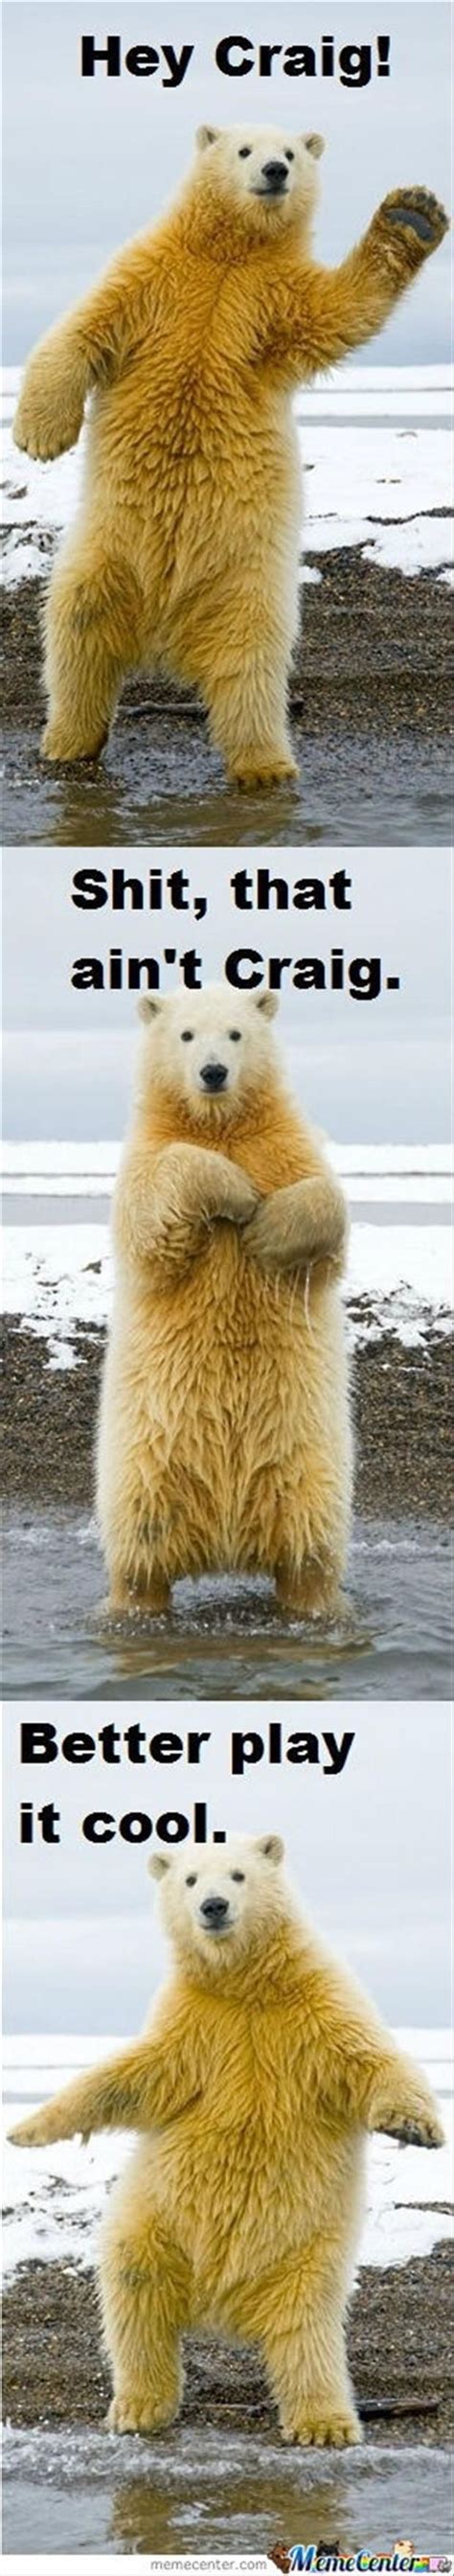 67 Best Images About Bear Humor On Pinterest Bear Meme Funny Bears